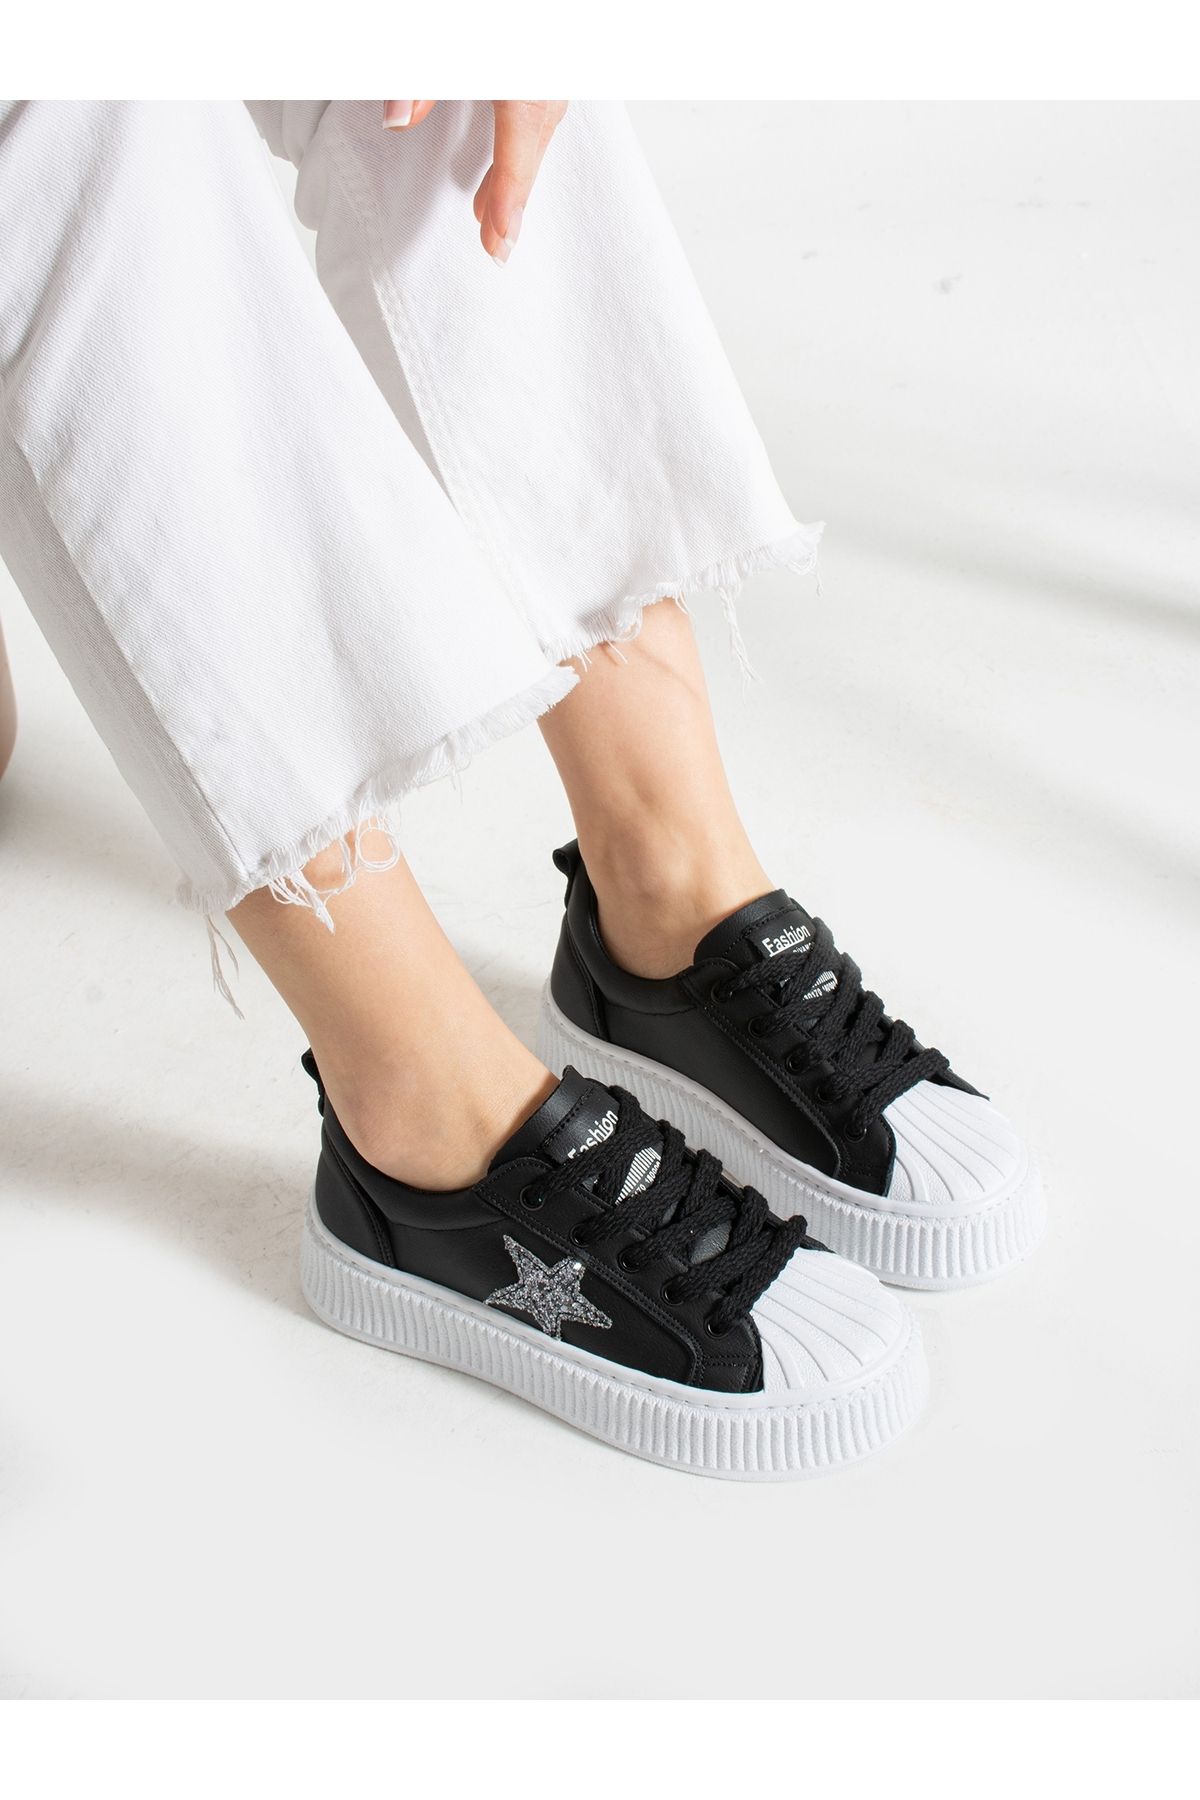 Alemdar Shoes STAR Siyah-Beyaz Yıldız Detay Kadın Sneakers